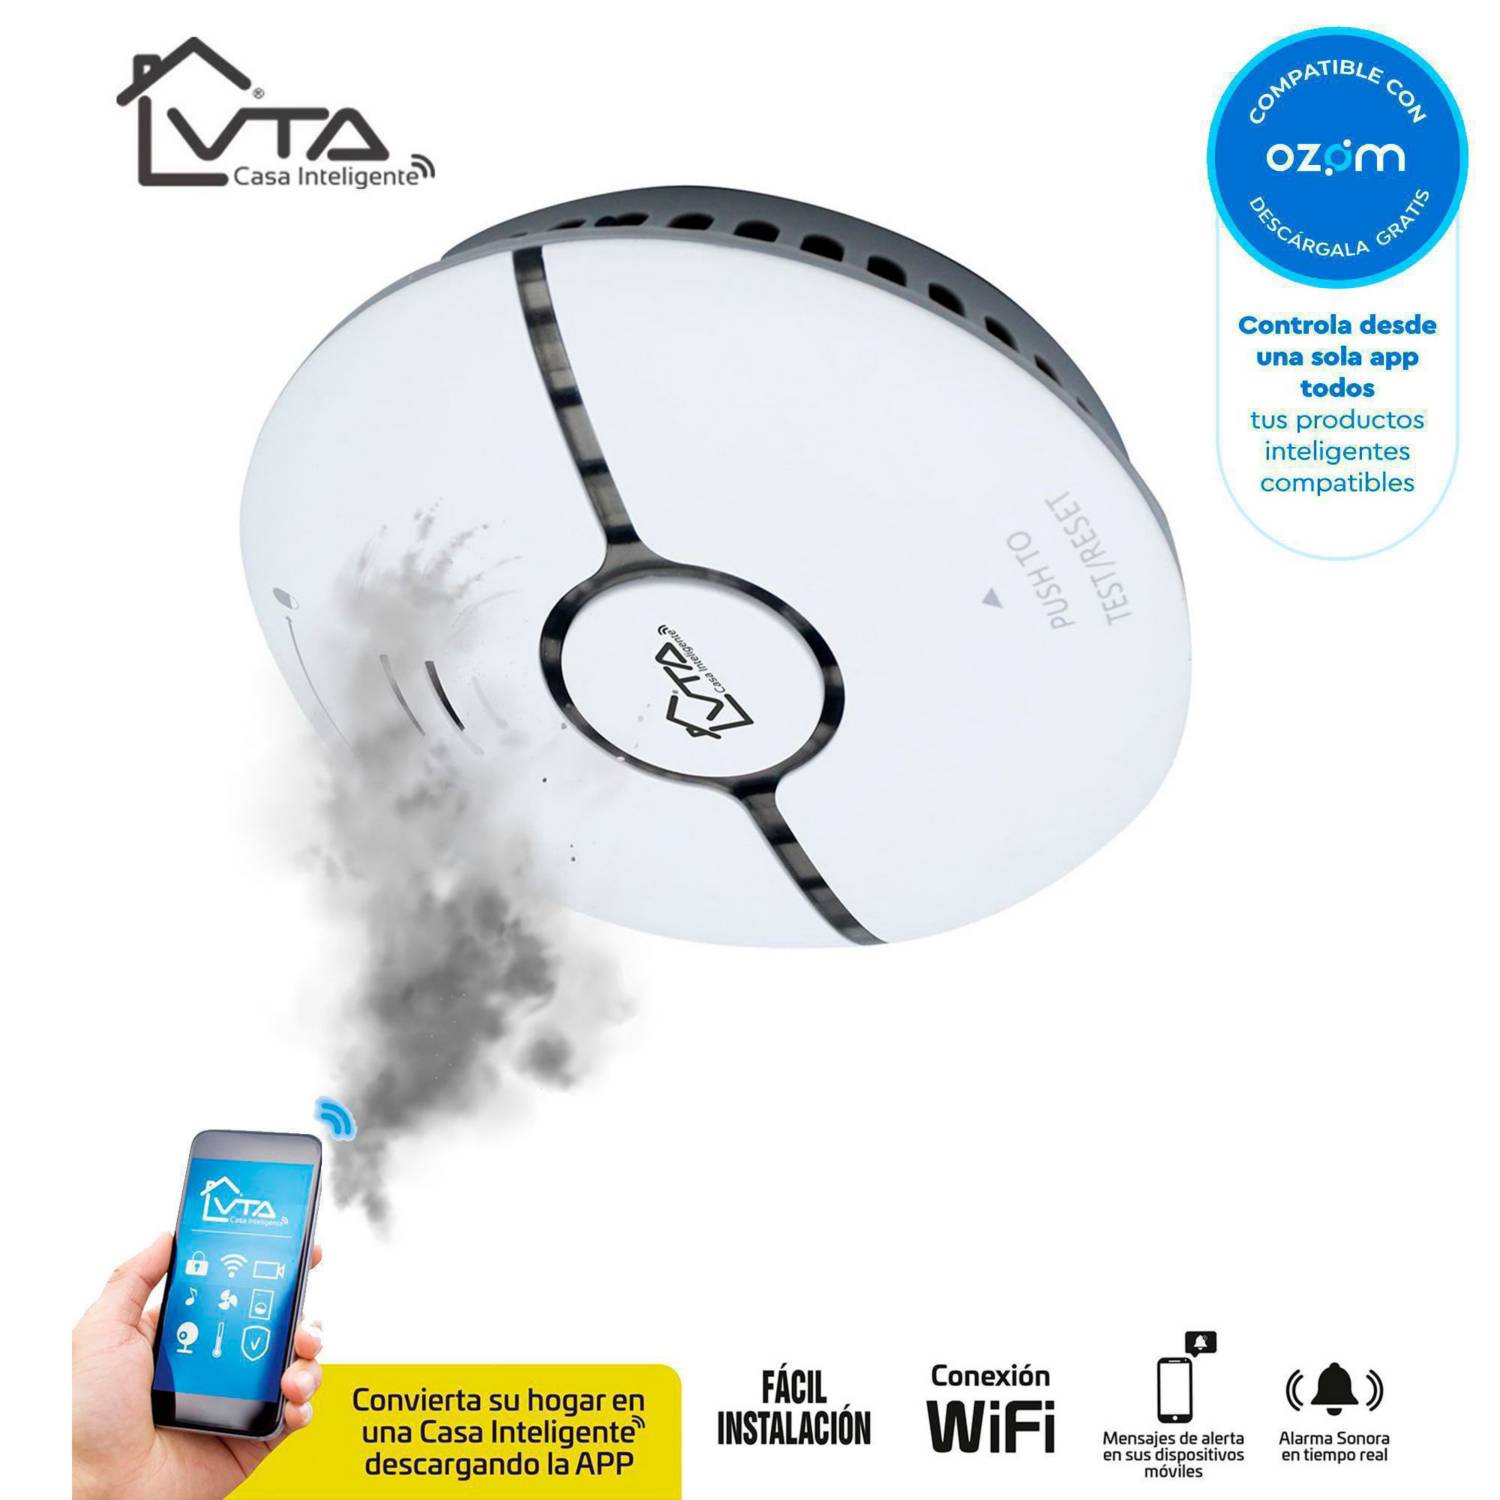 Alarma Detector VTA Humo WiFi